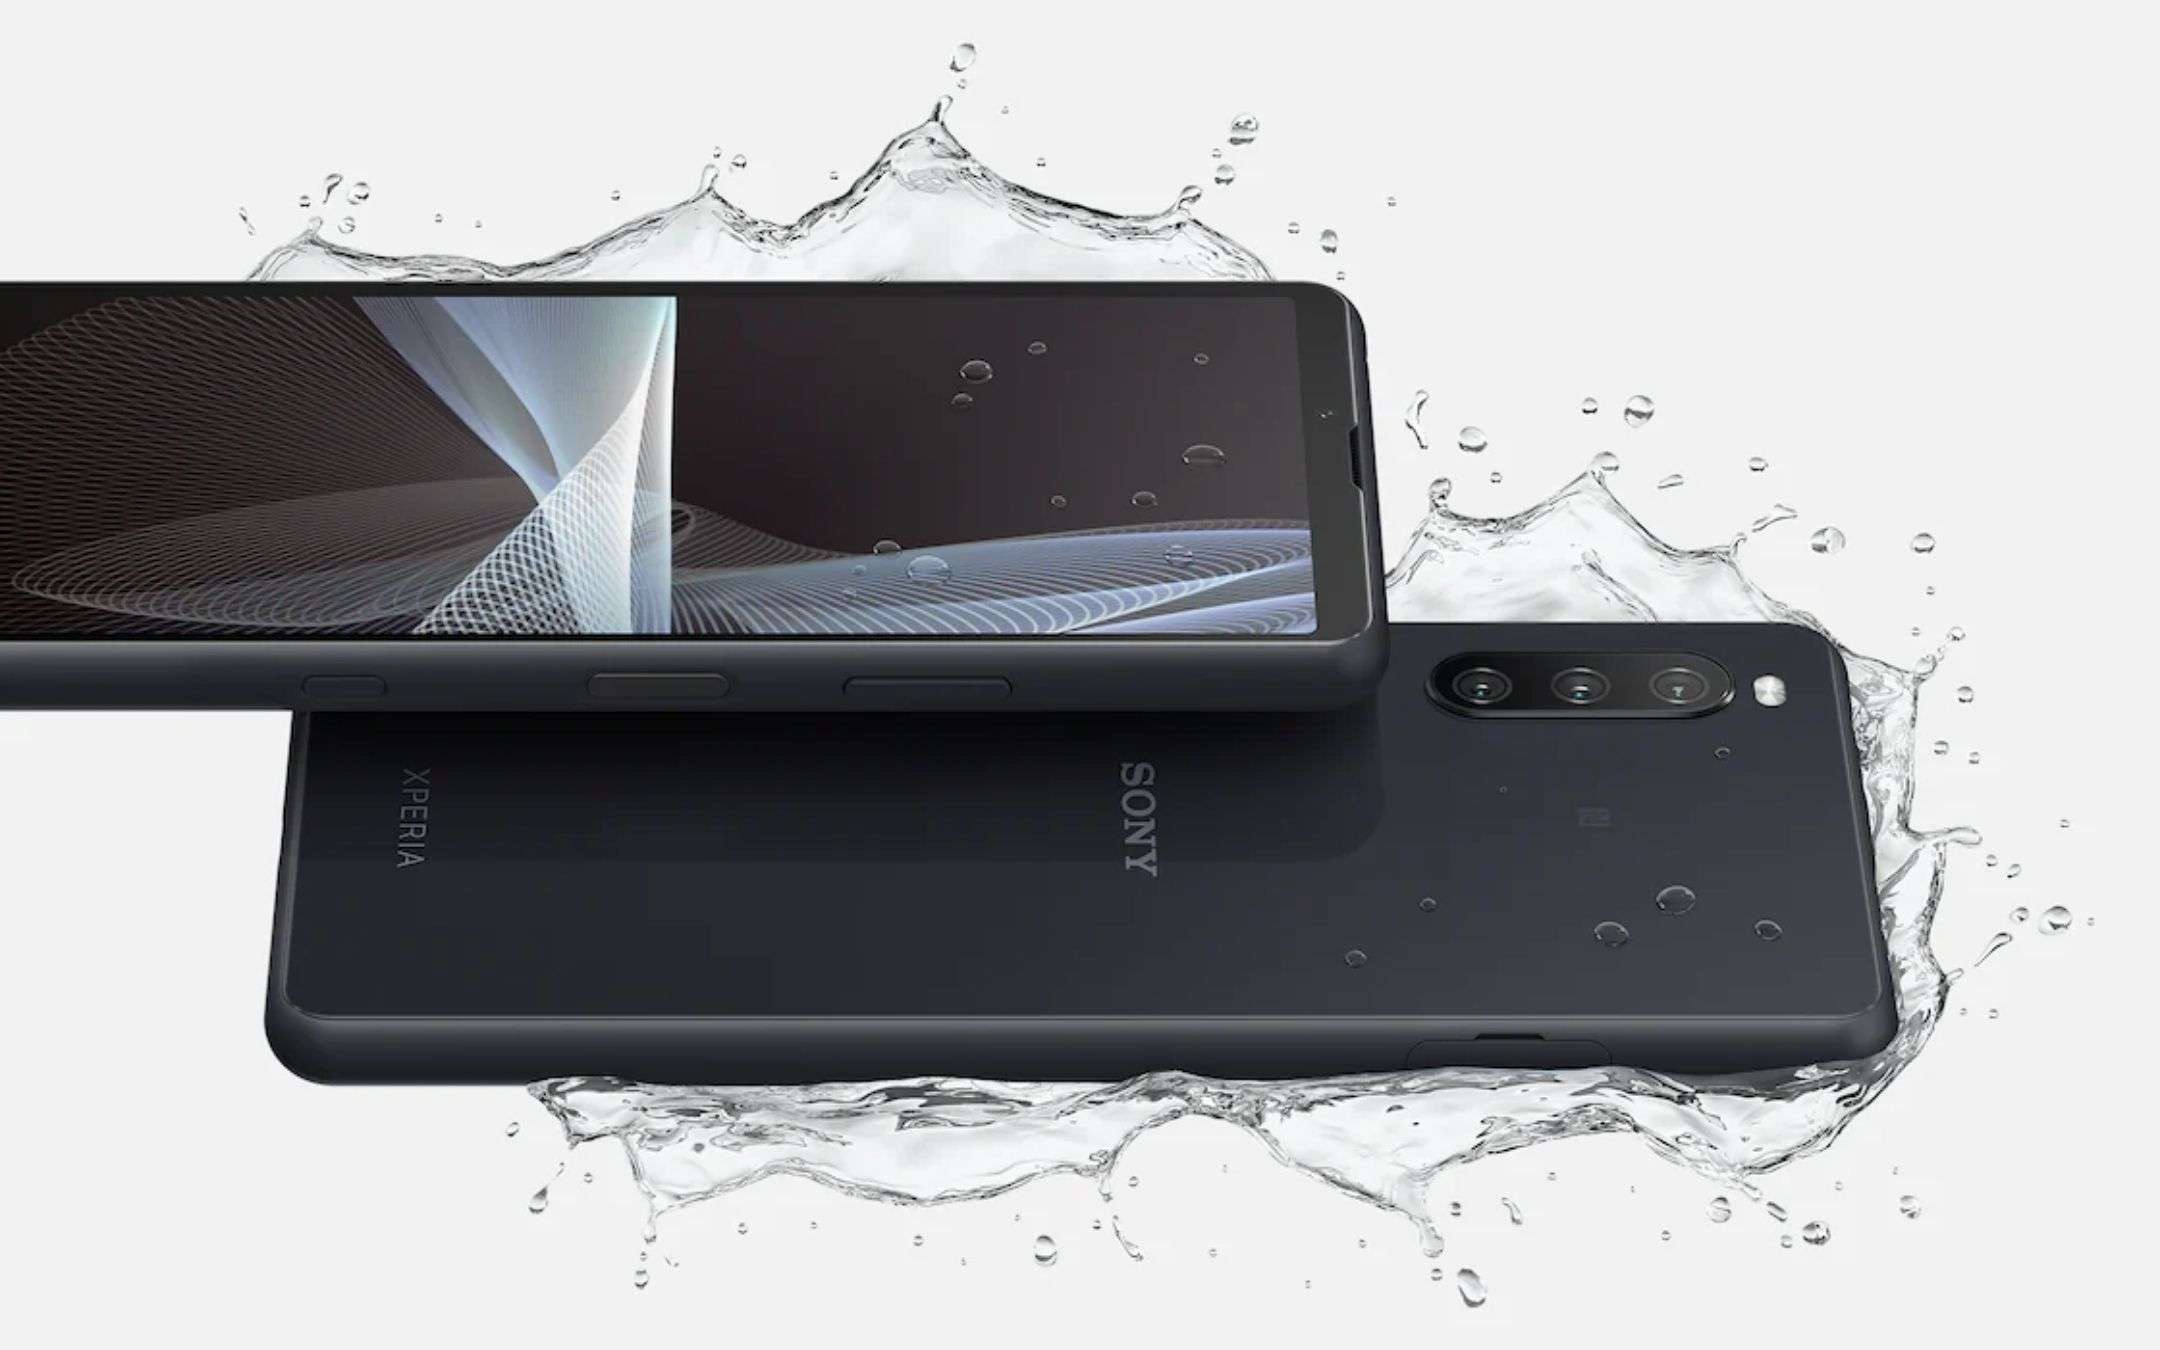 Xperia 10 II e 10 III riceveranno Android 12 a breve, parola di Sony